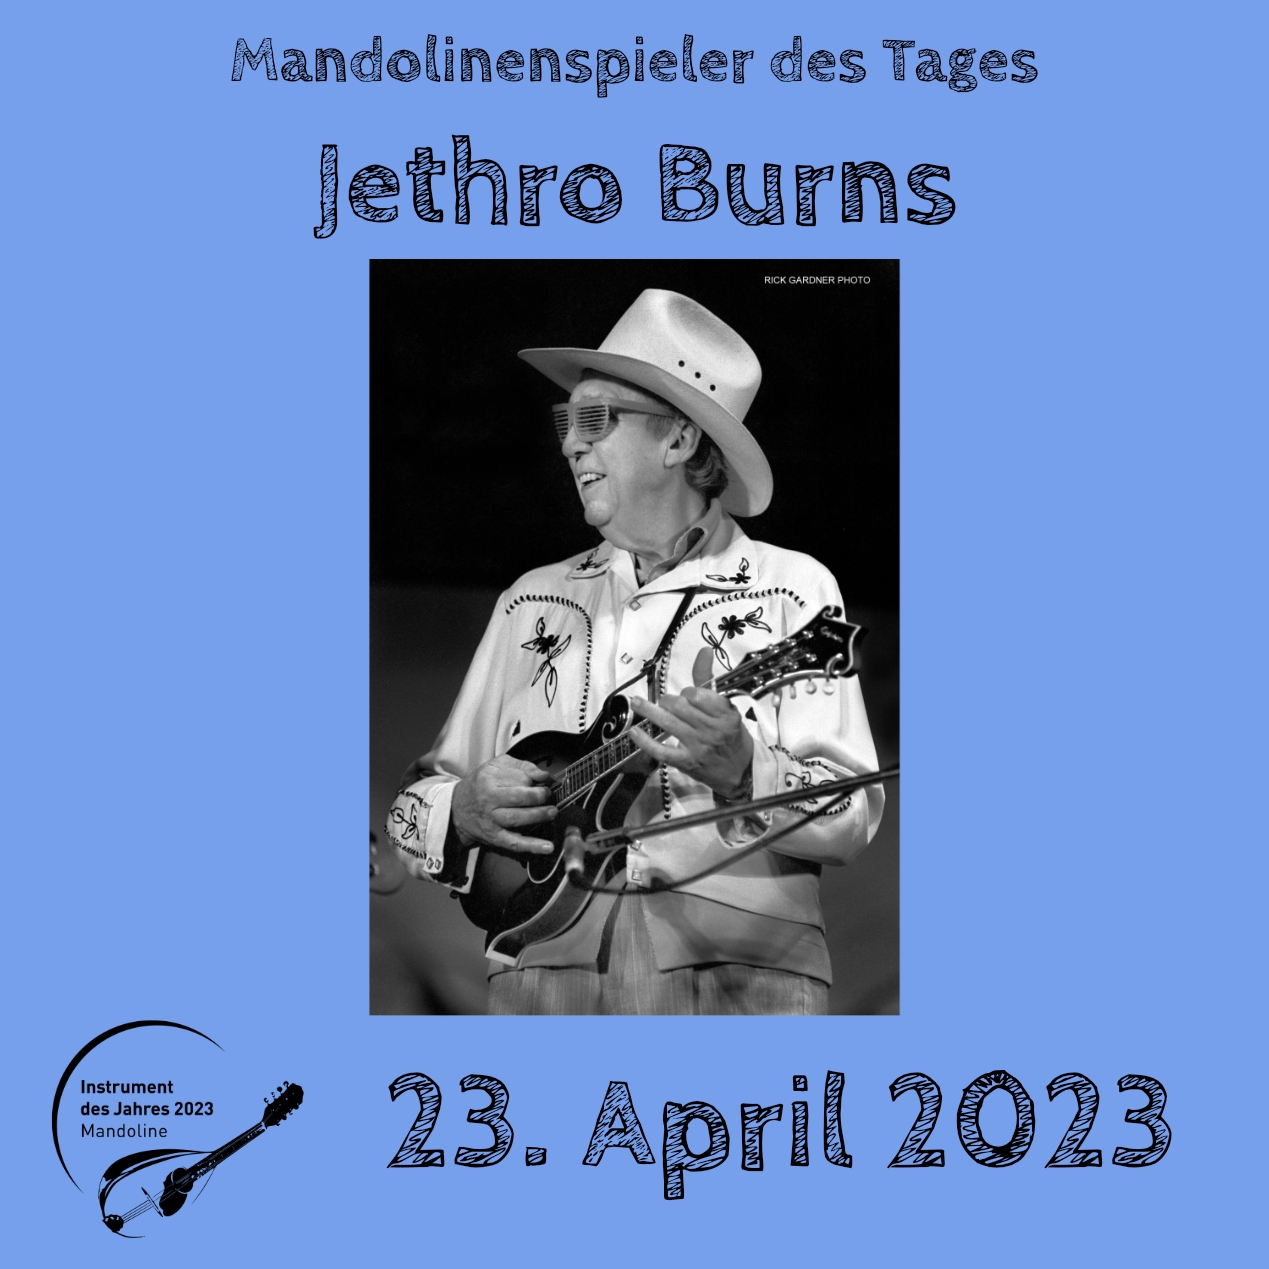 Jethro Burns Instrument des Jahres 2023 Mandolinenspieler Mandolinenspielerin des Tages